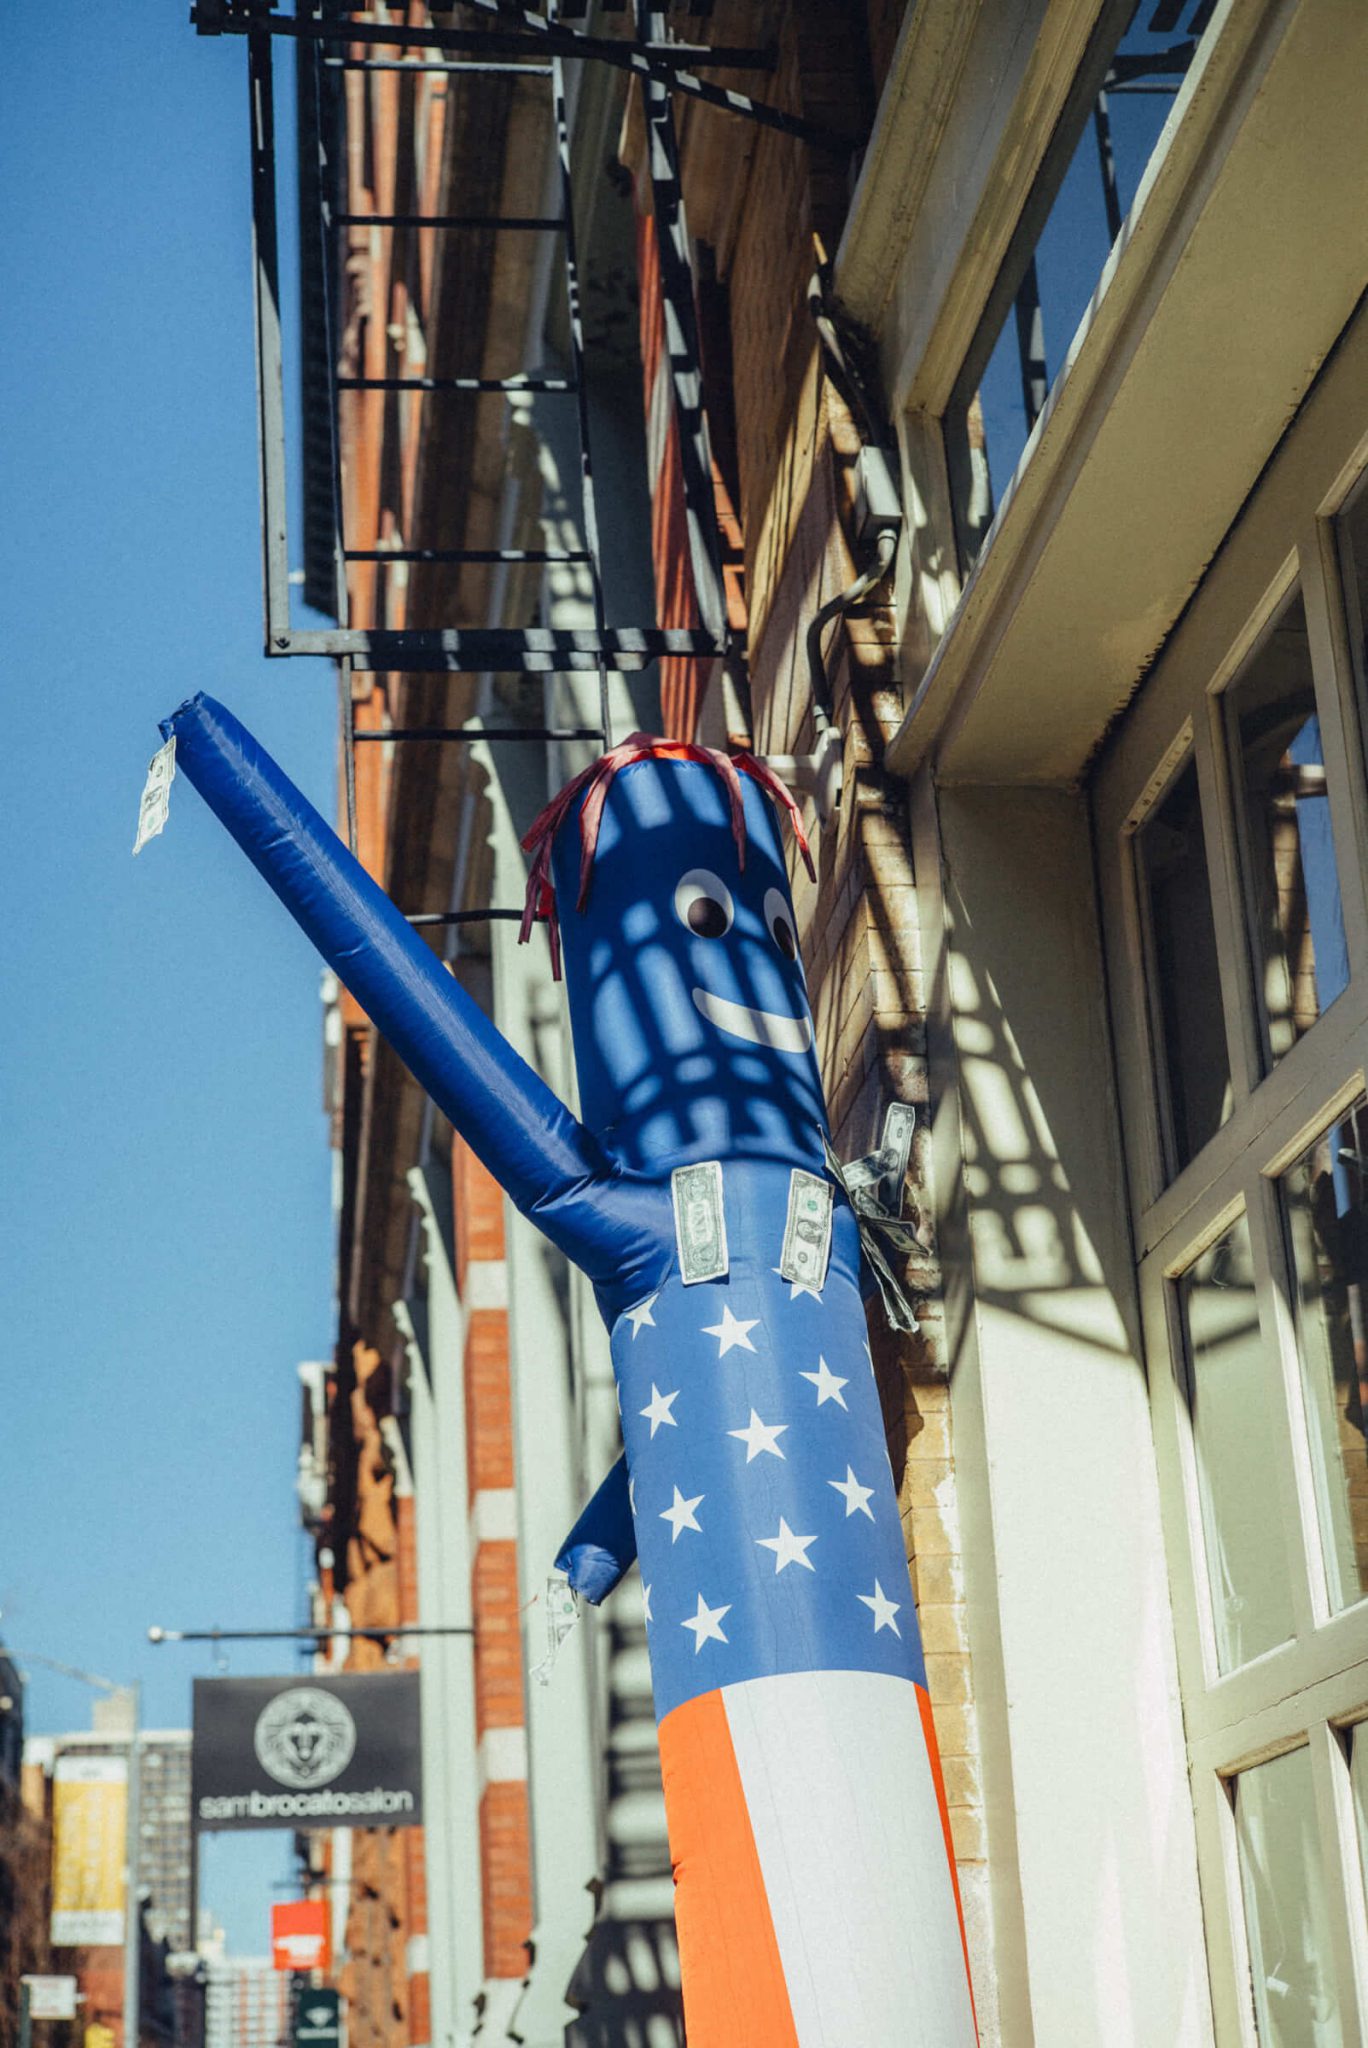 ジュエリーデザイナー「KOTA OKUDA」のNYC散策ルート。チェルシーの骨董市から、ハーレムのストリートで受けとる音と刺激